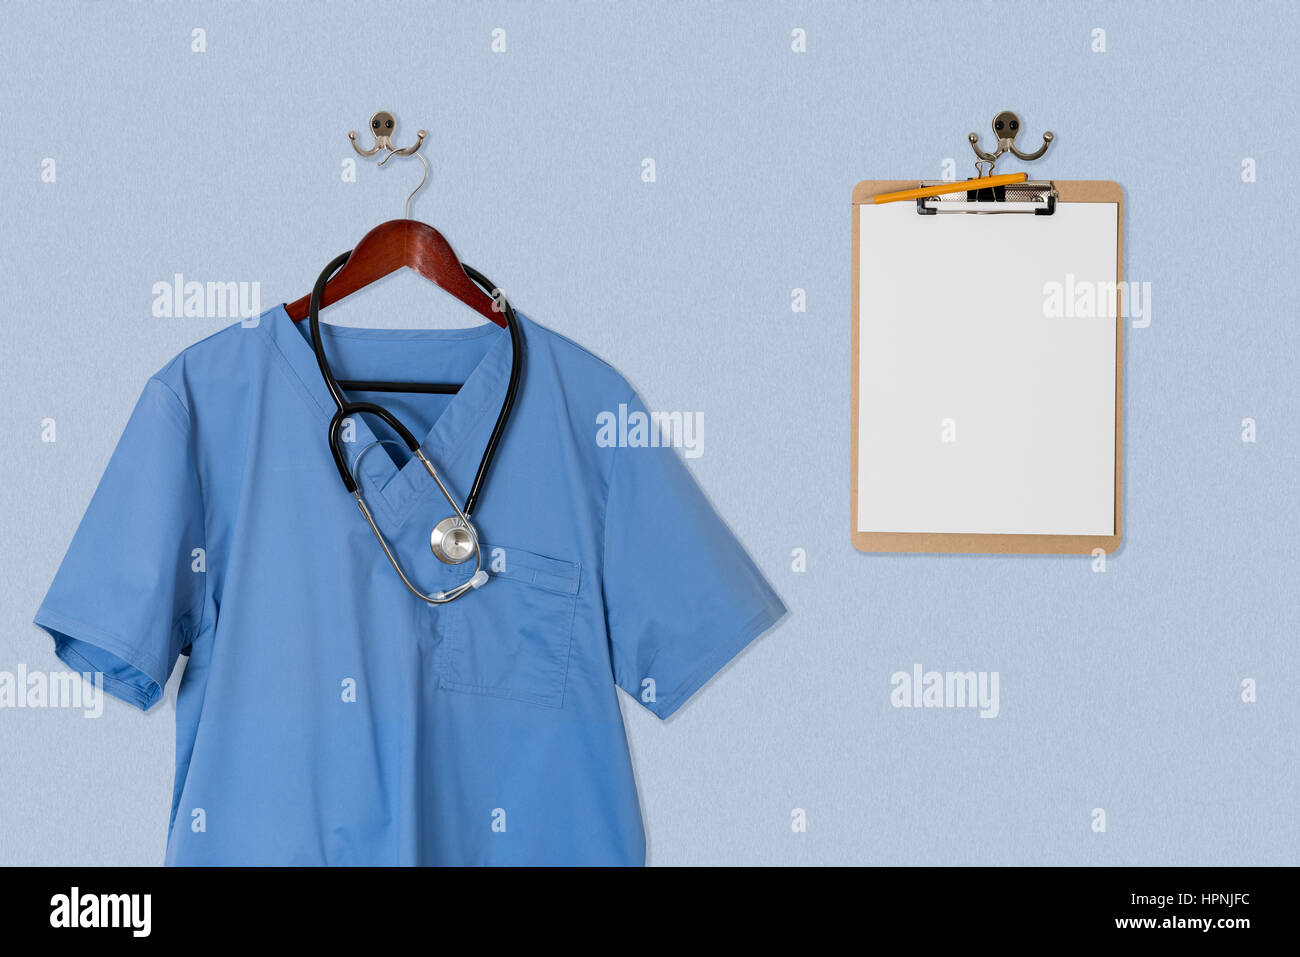 https://c8.alamy.com/comp/HPNJFC/blue-medical-scrubs-uniform-shirt-hanging-on-a-hanger-with-stethoscope-HPNJFC.jpg